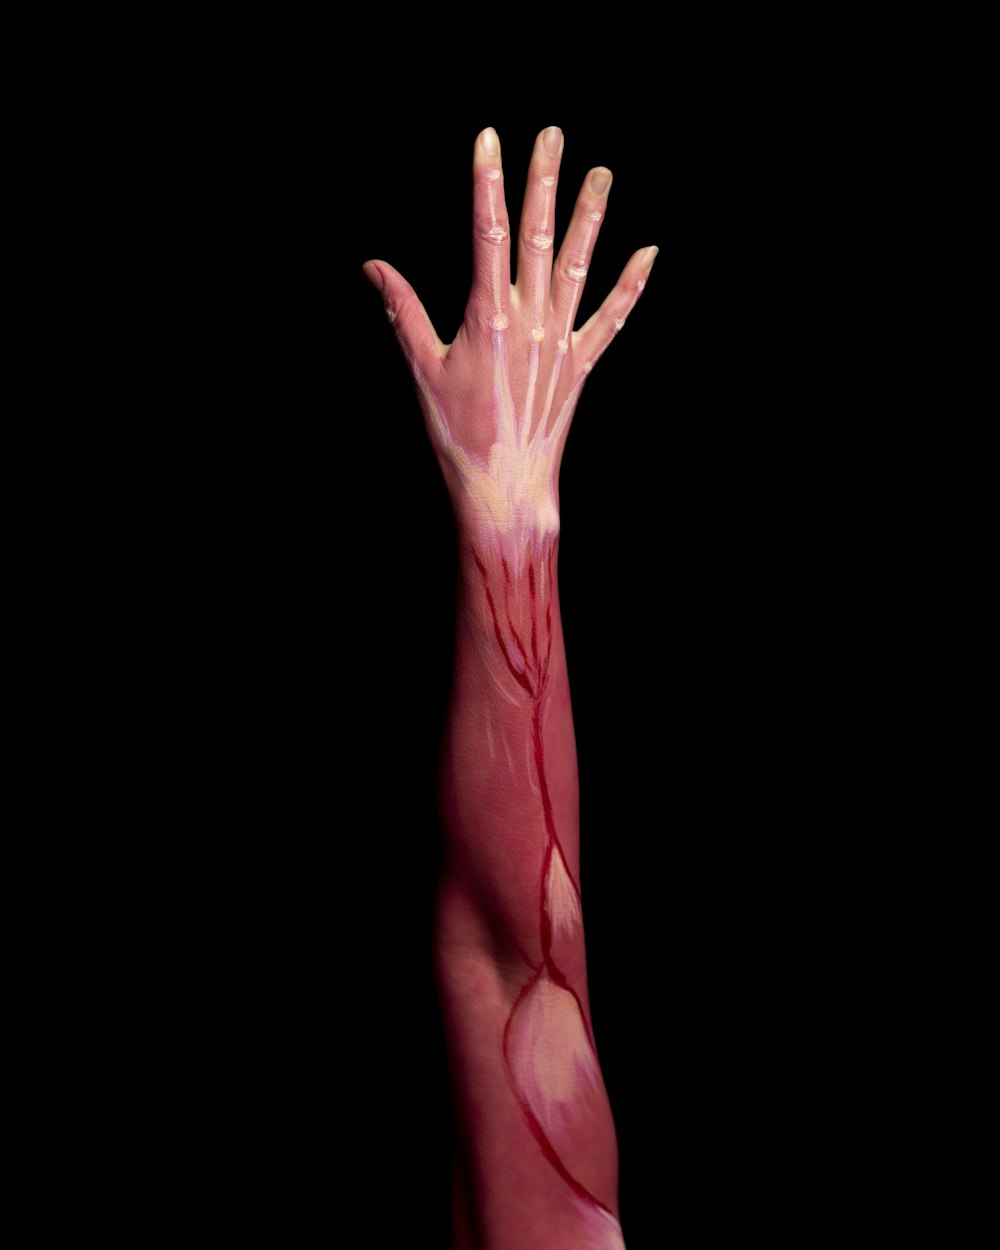 Personen linke Hand mit rosa Farbe